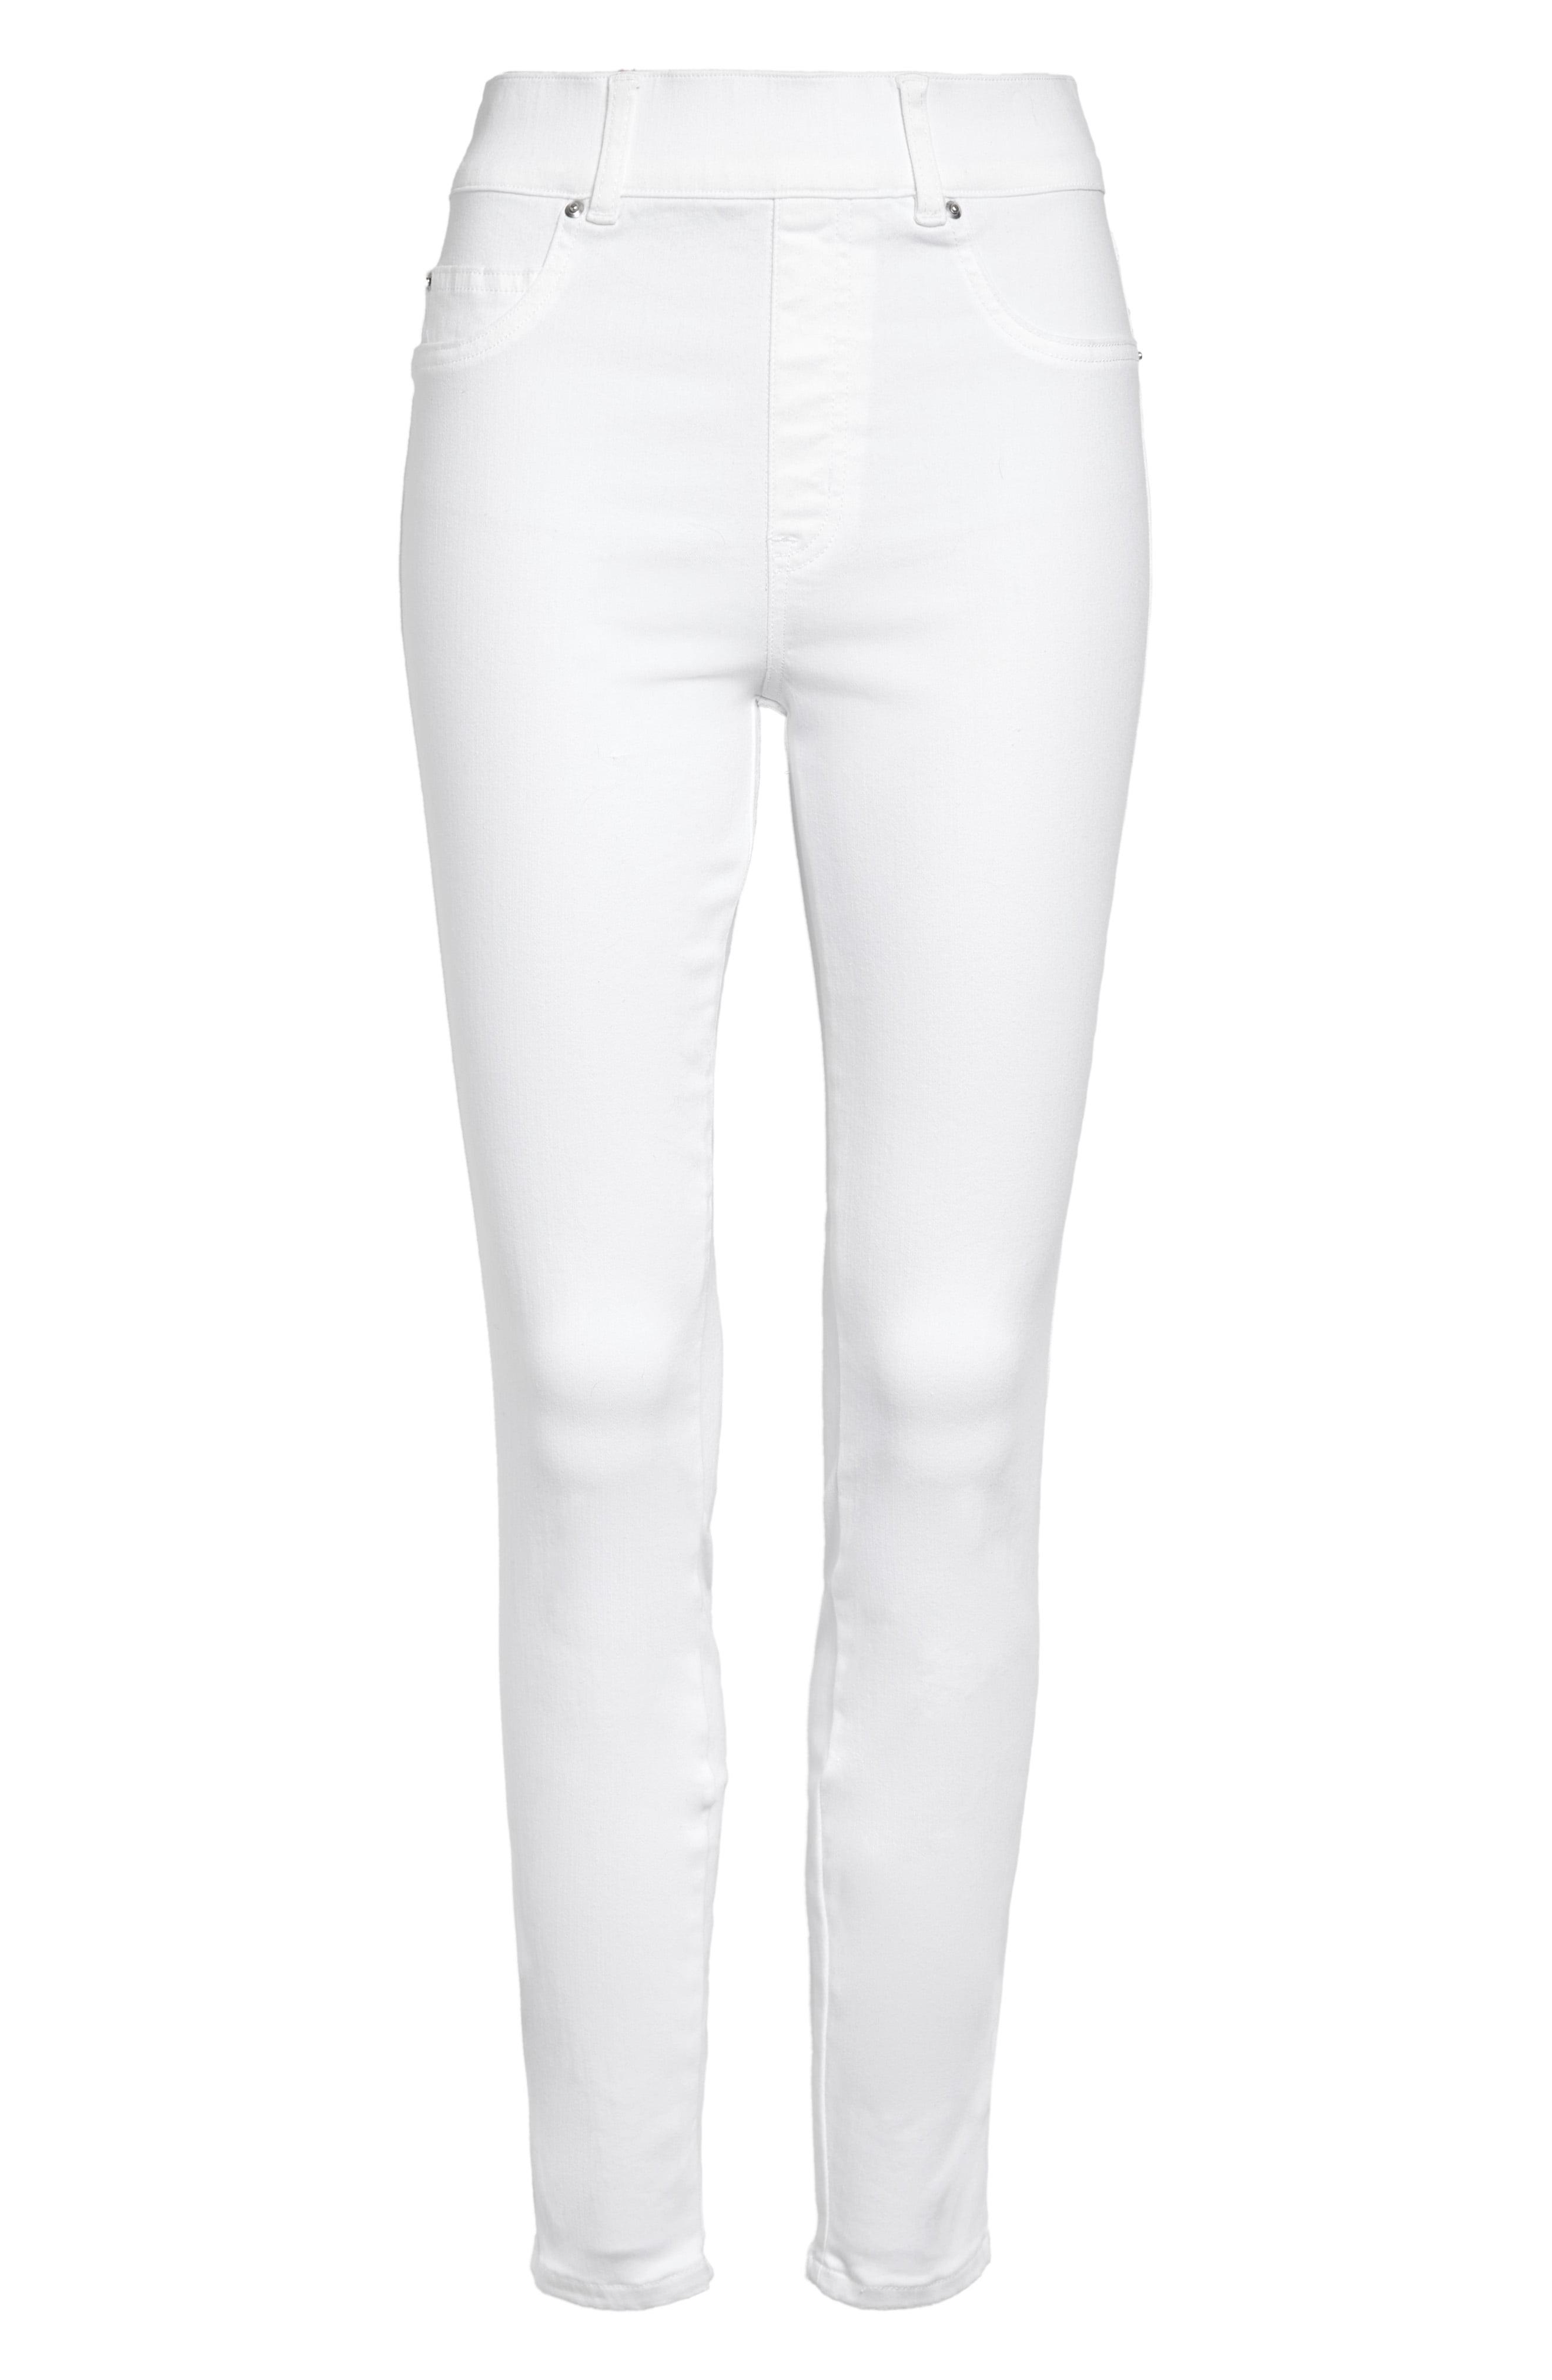 Spanx Denim Spanx Ankle Skinny Jeans in White - Lyst